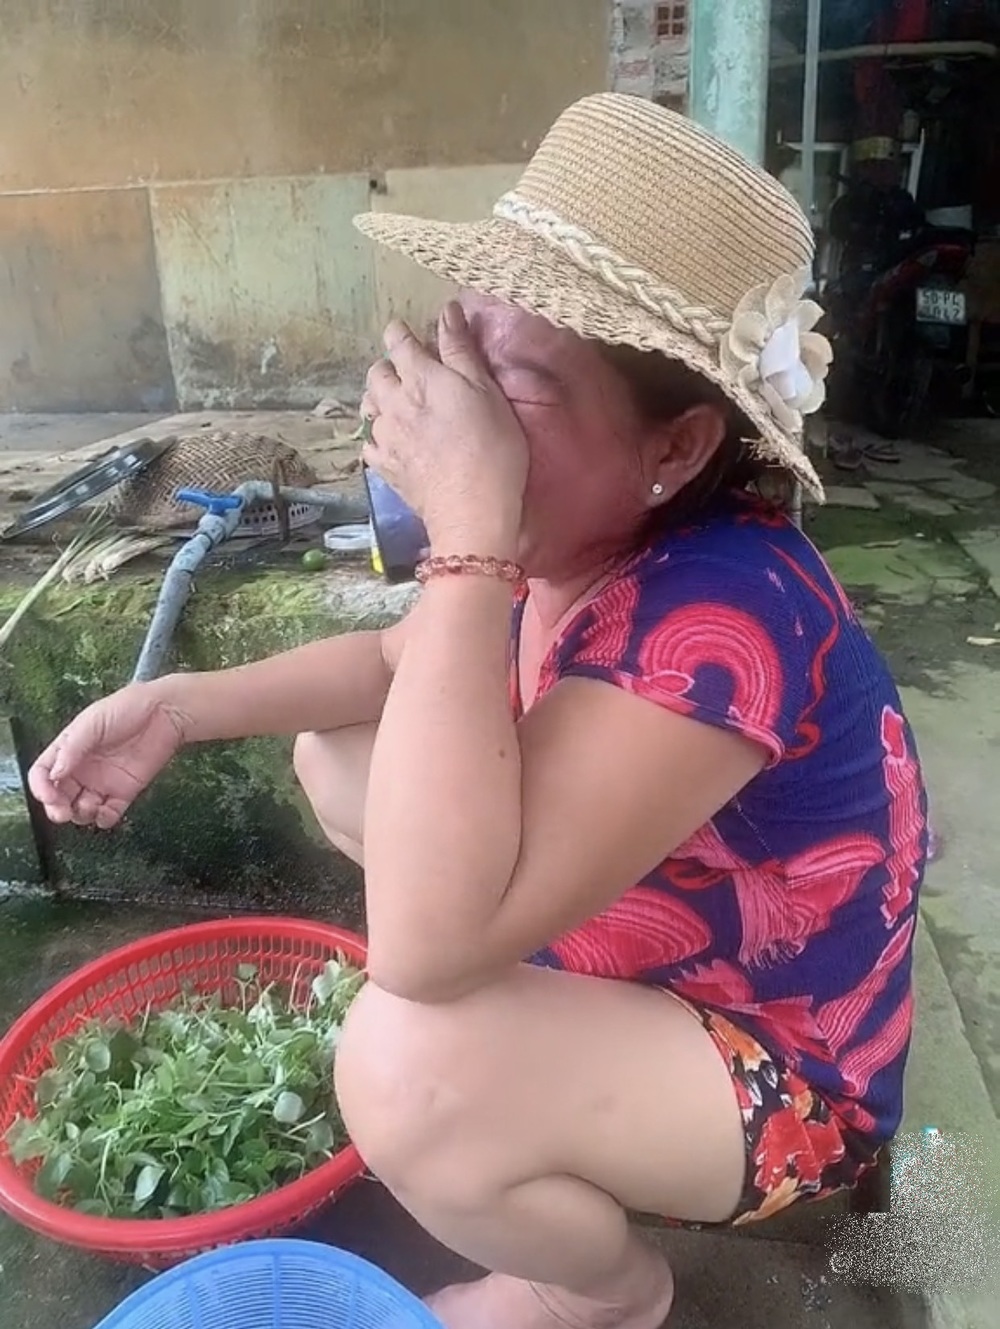  
Mẹ òa khóc nức nở khi sợ con gái bị đói ở Sài Gòn (Ảnh chụp màn hình)